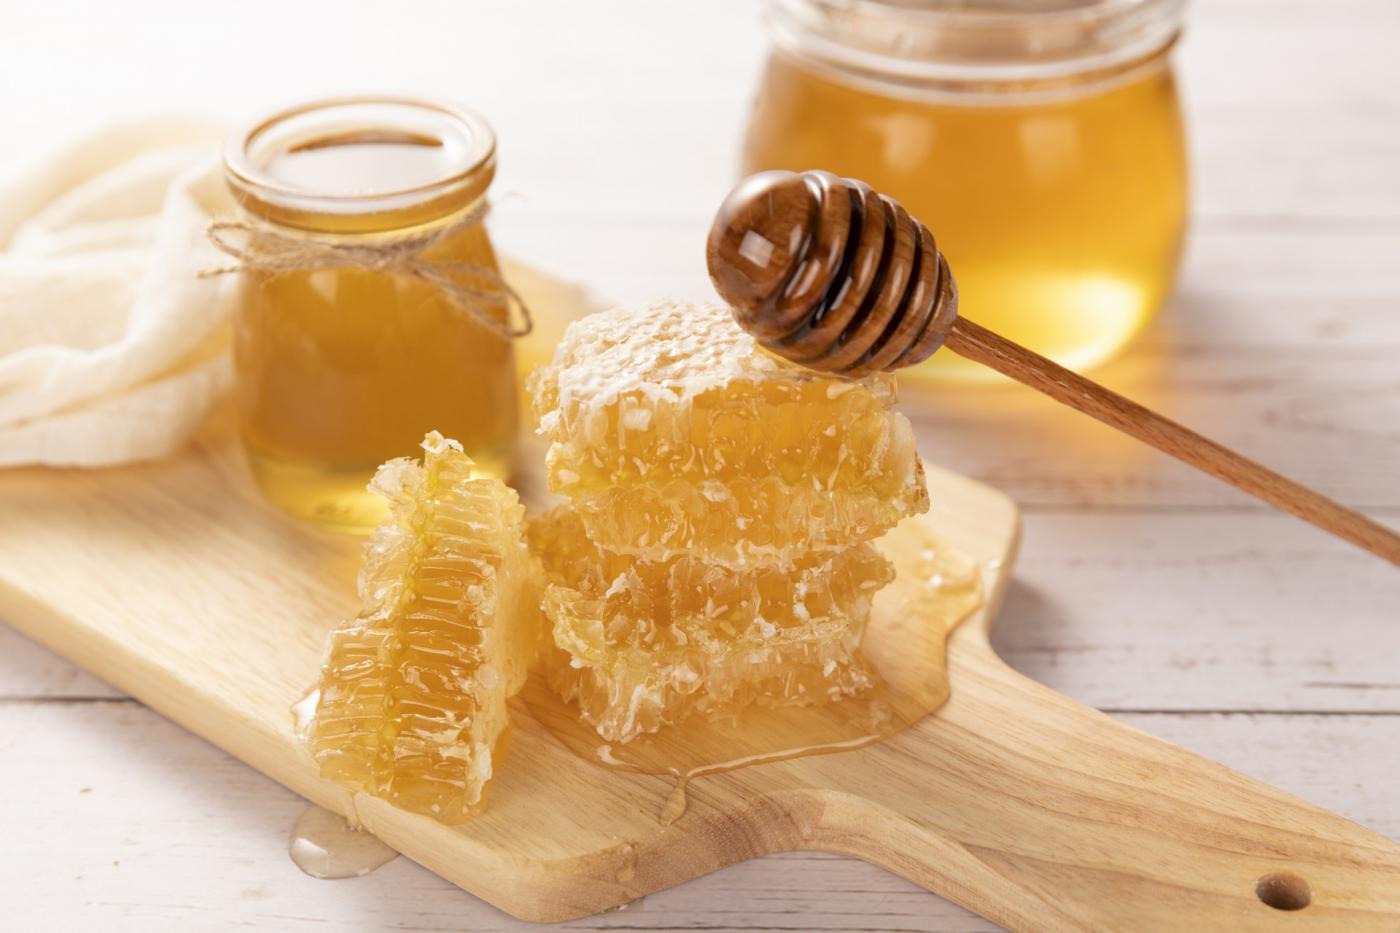 嘉峪关蜂蜜制品检测,蜂蜜制品检测费用,蜂蜜制品检测机构,蜂蜜制品检测项目